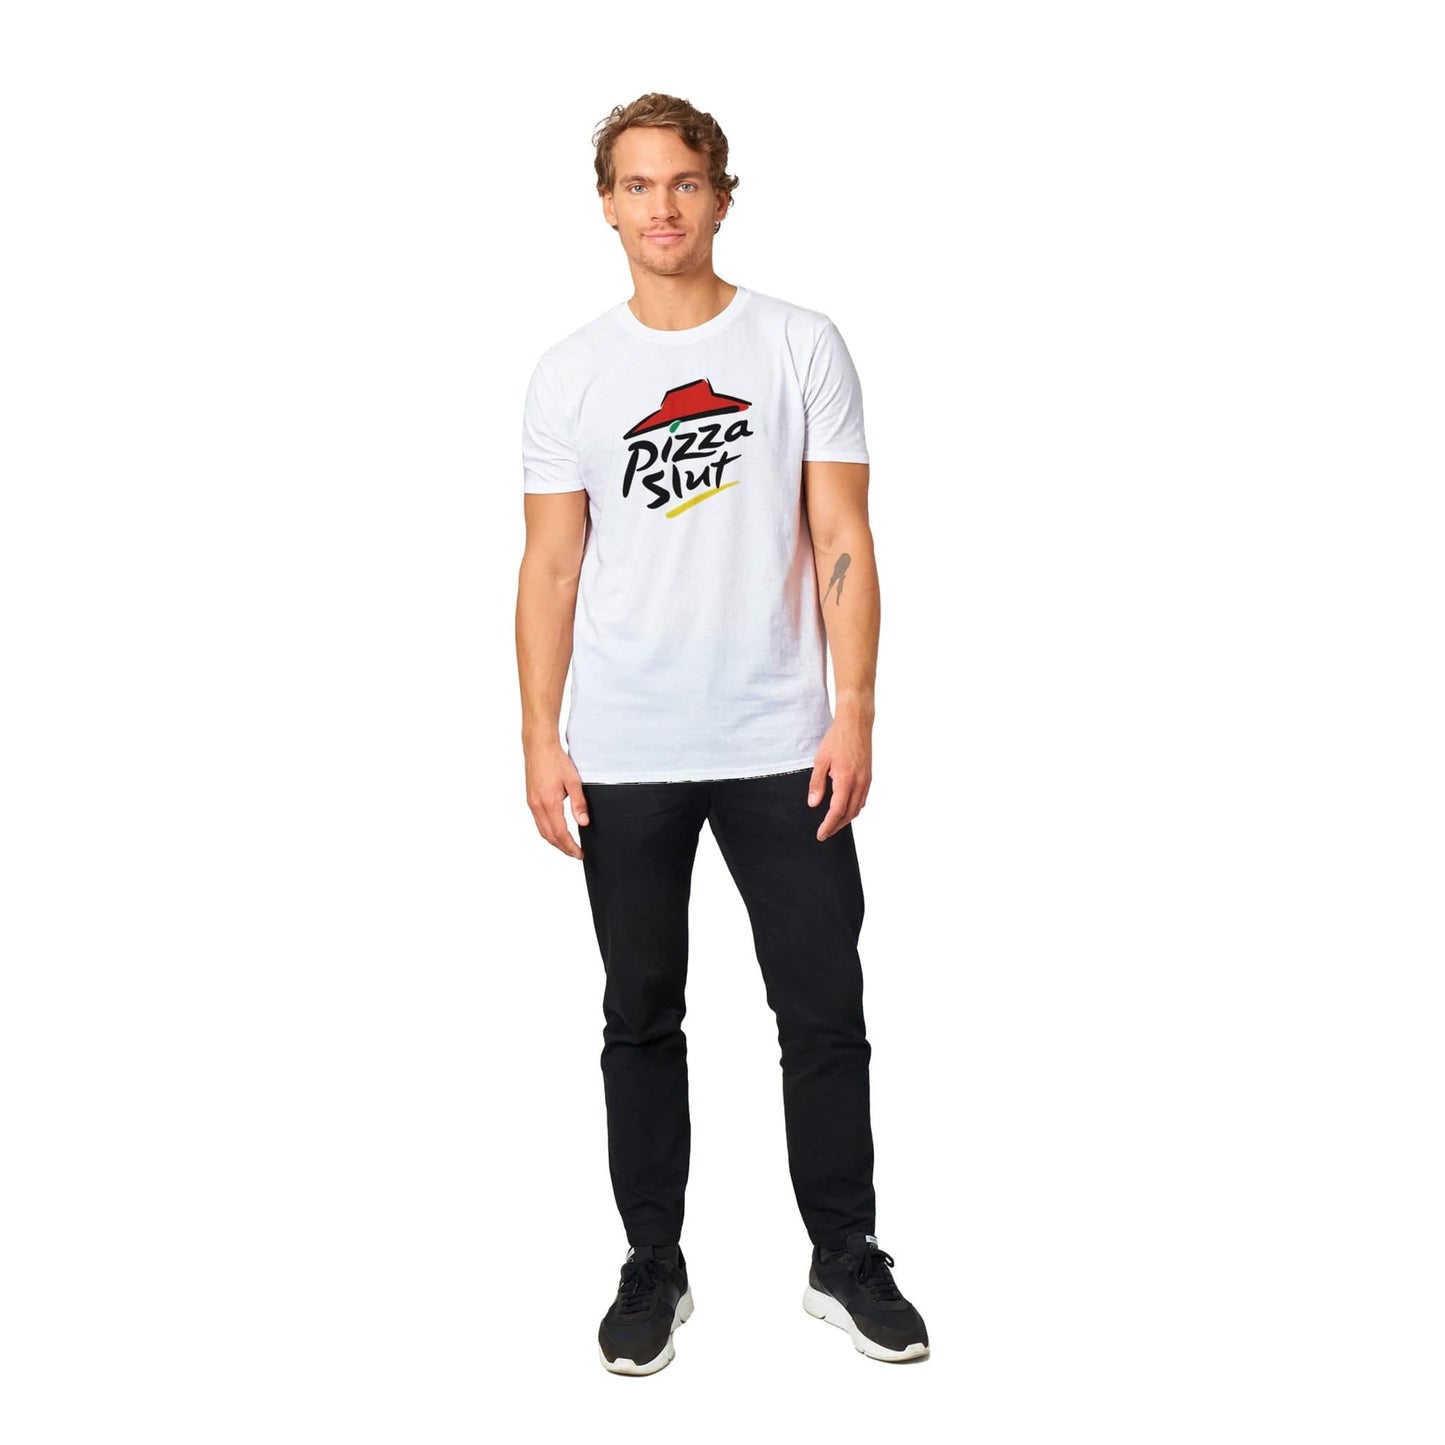 Pizza Slut T-shirt Australia Online Color